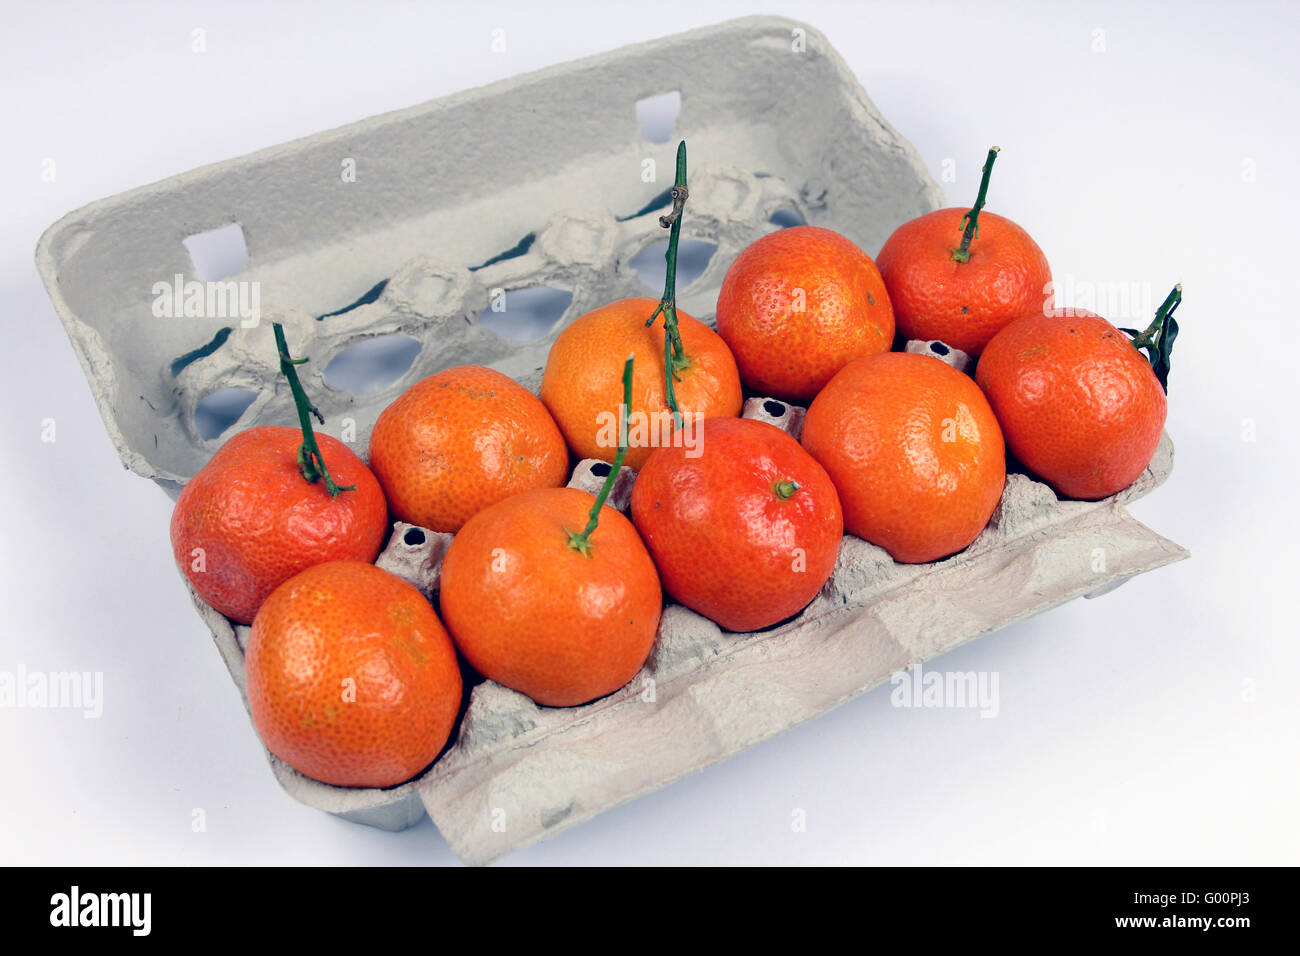 Tangerines in a egg carton Stock Photo